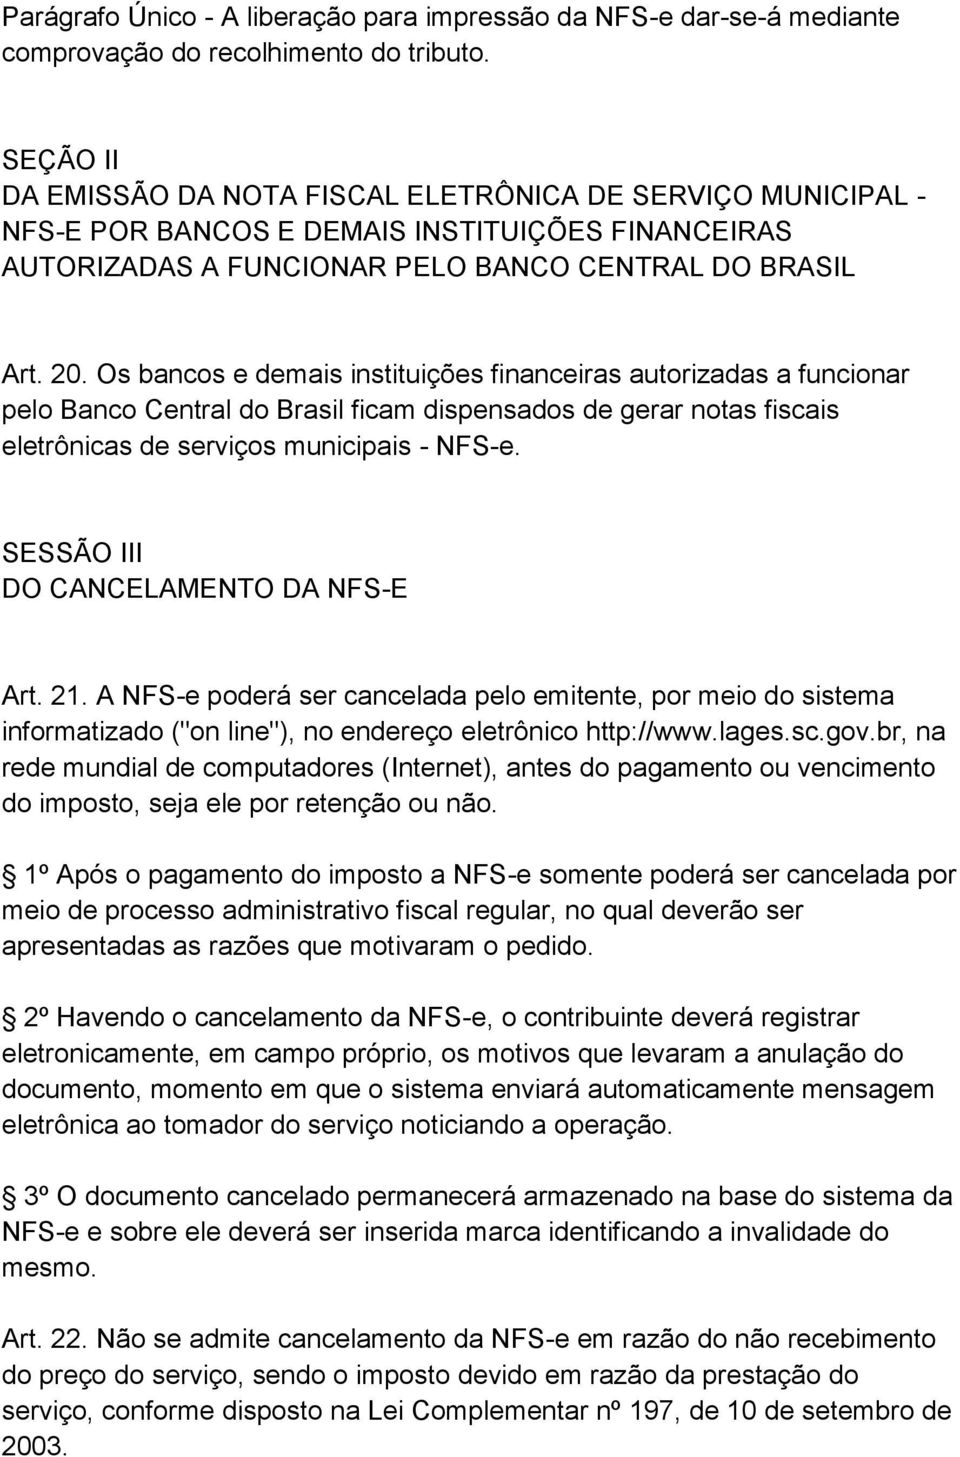 Os bancos e demais instituições financeiras autorizadas a funcionar pelo Banco Central do Brasil ficam dispensados de gerar notas fiscais eletrônicas de serviços municipais - NFS-e.